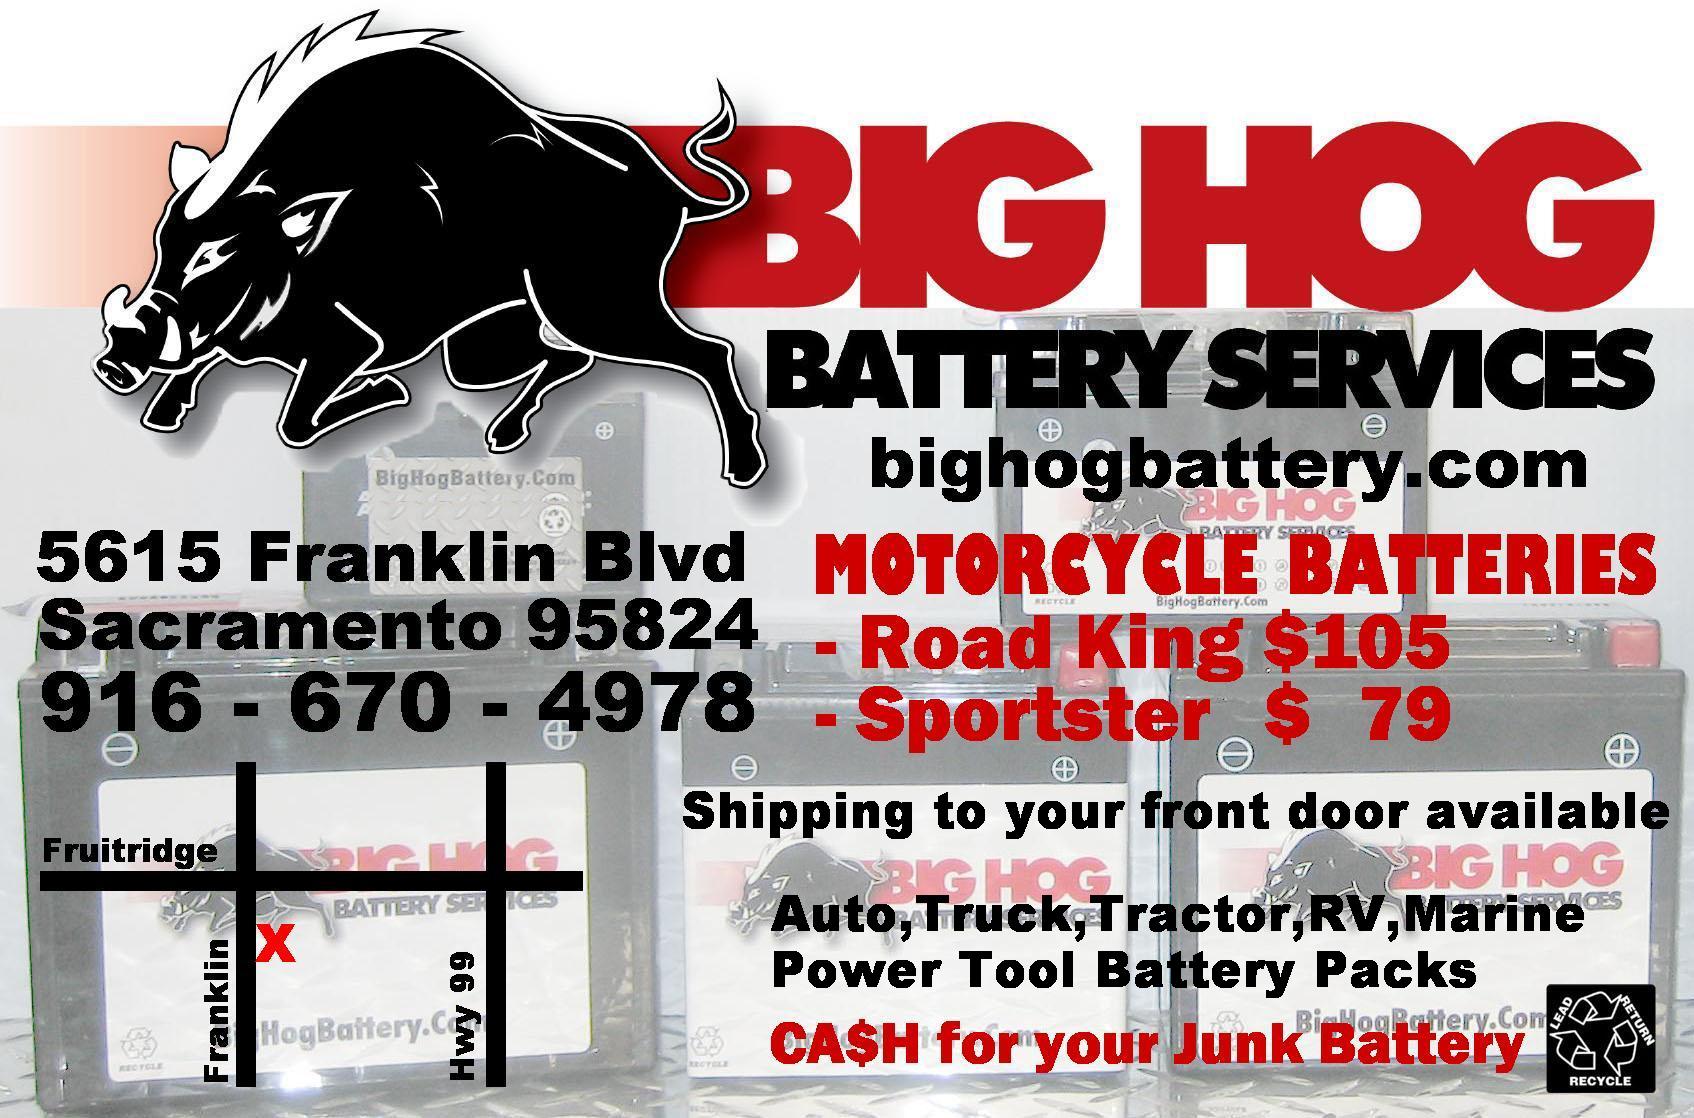 Big Hog Batteries, Sacramento, Ca